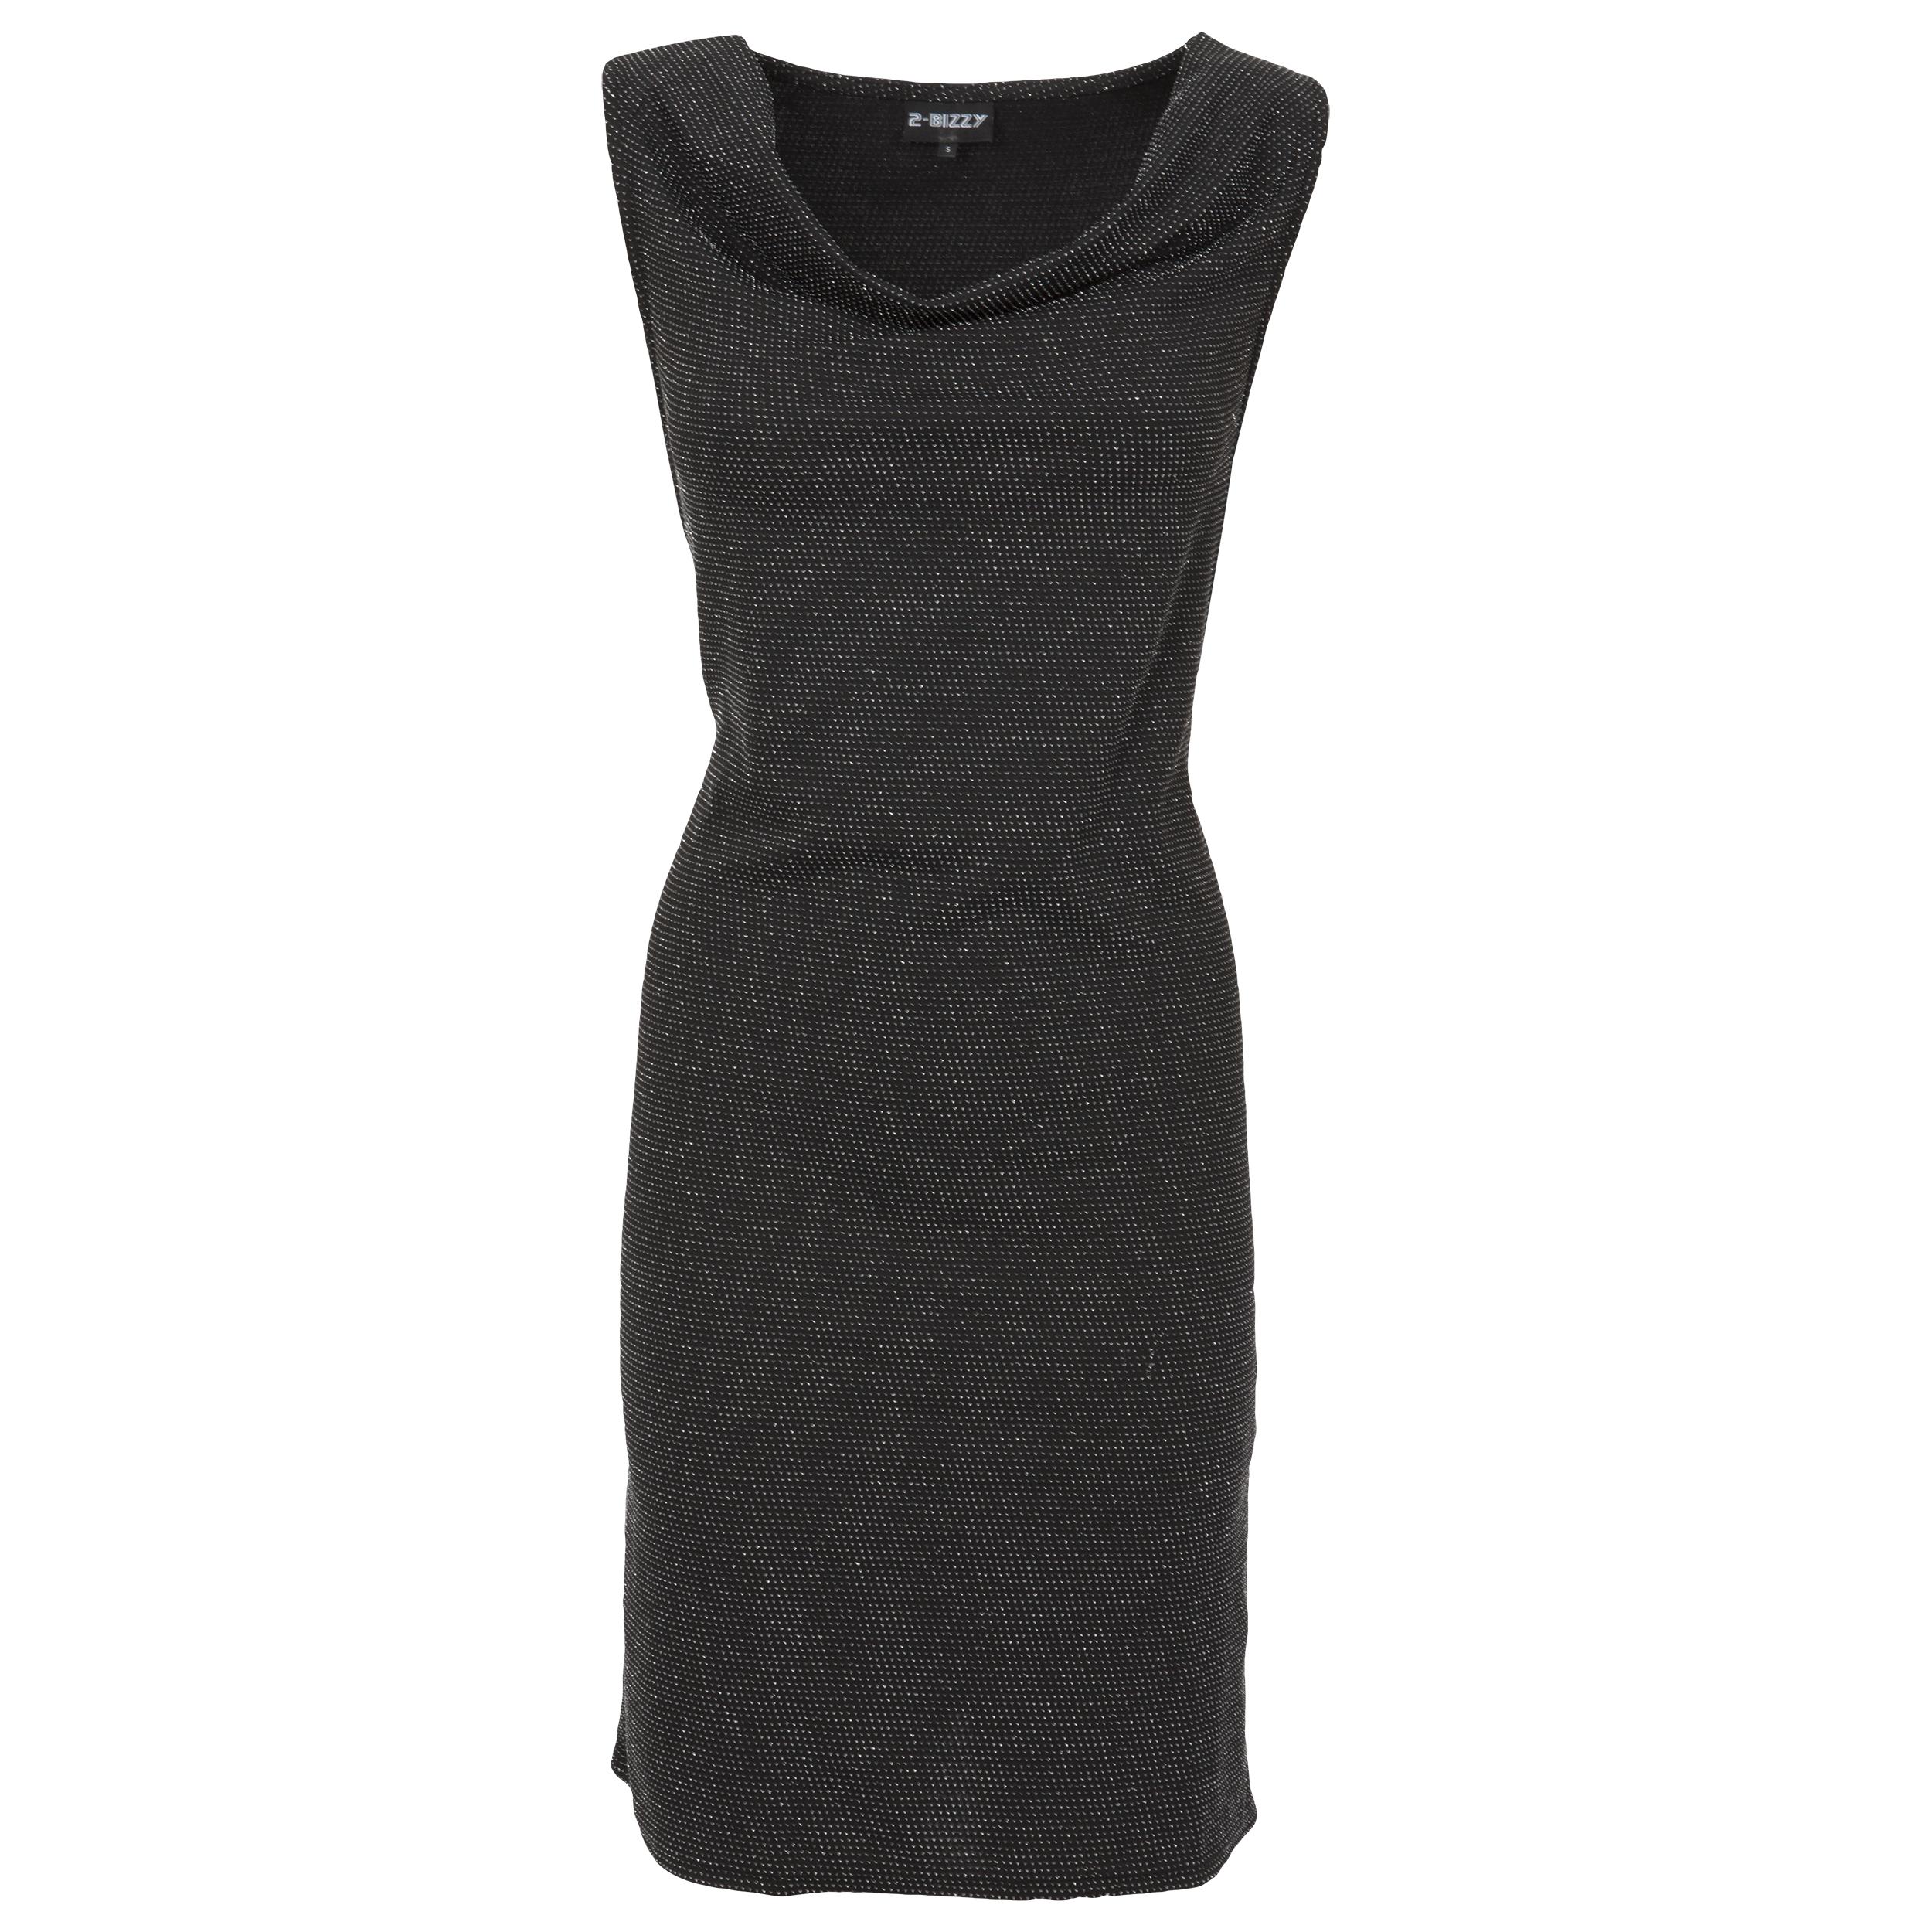 Outfit 1: zwarte jurk - Shoe Discount - 29,99 euro